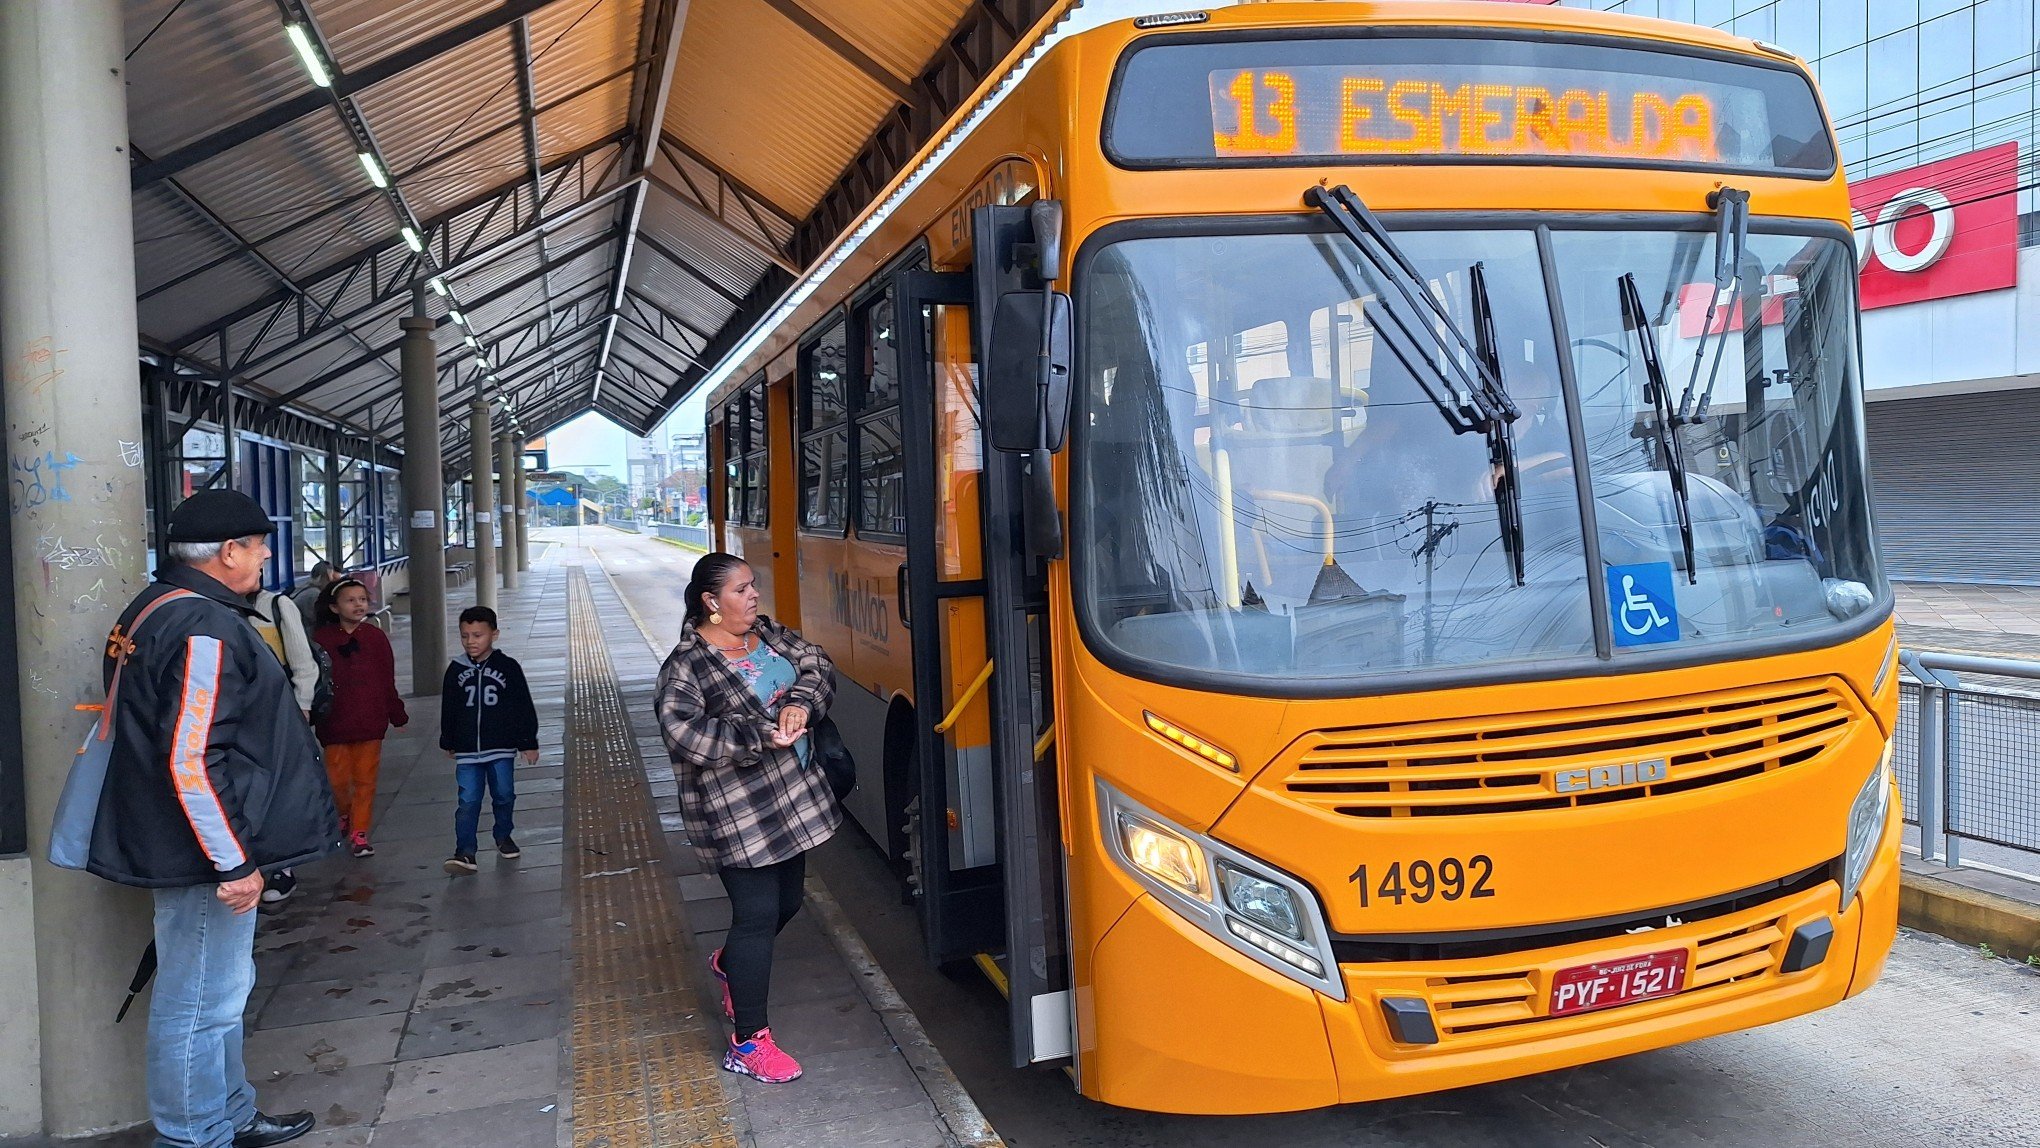 NOVO HAMBURGO: Passageiros esperam por uma hora pelo transporte nas paradas; veja os bairros mais afetados